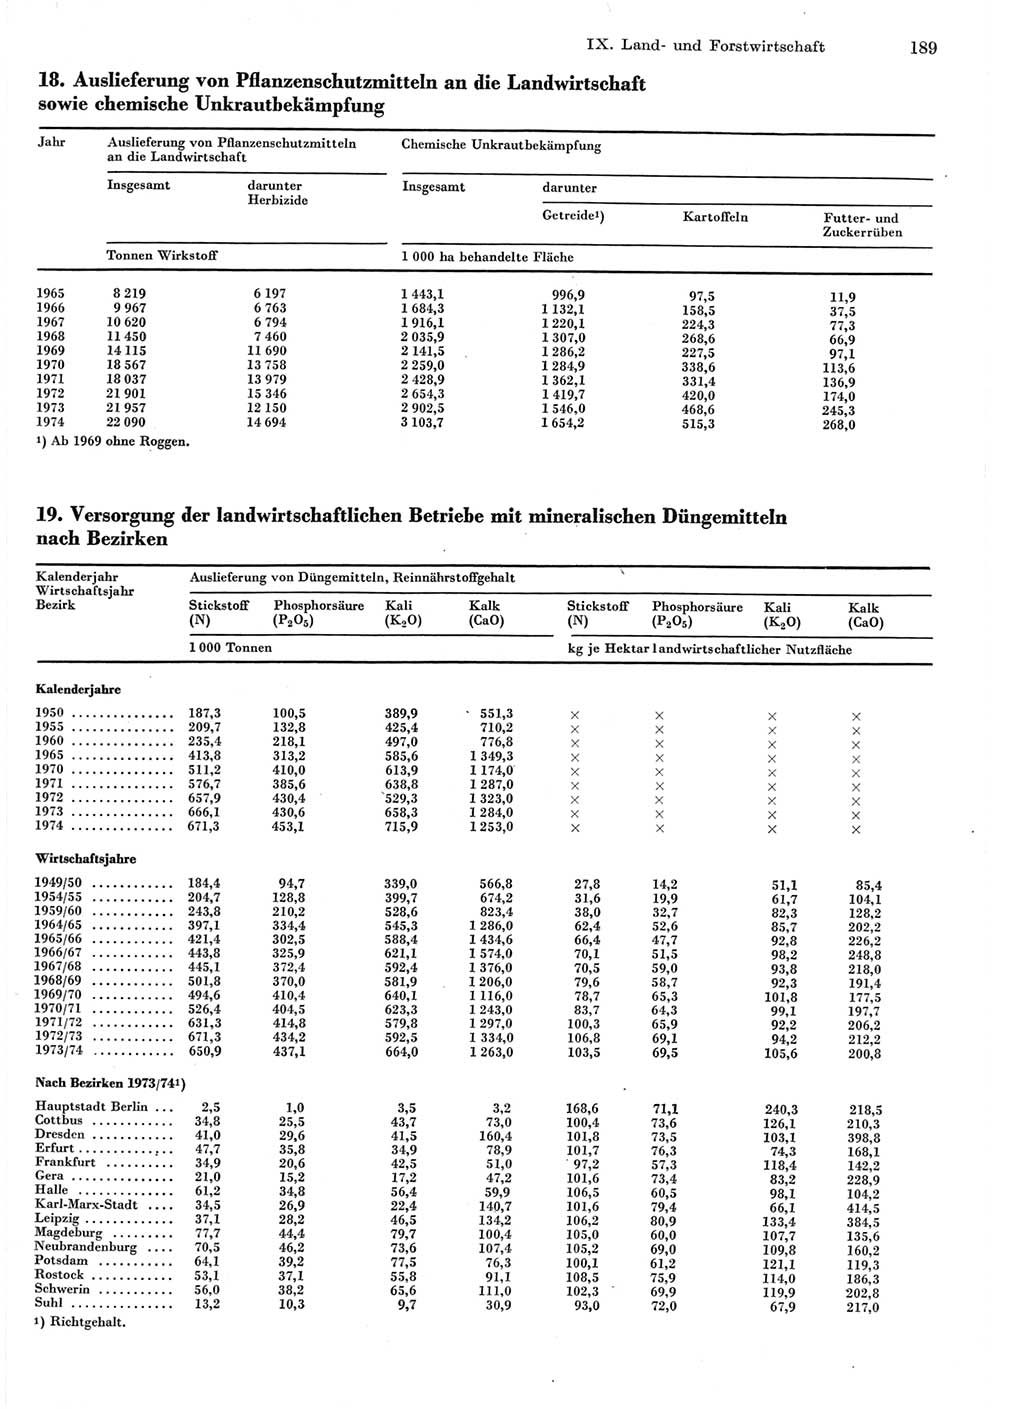 Statistisches Jahrbuch der Deutschen Demokratischen Republik (DDR) 1975, Seite 189 (Stat. Jb. DDR 1975, S. 189)